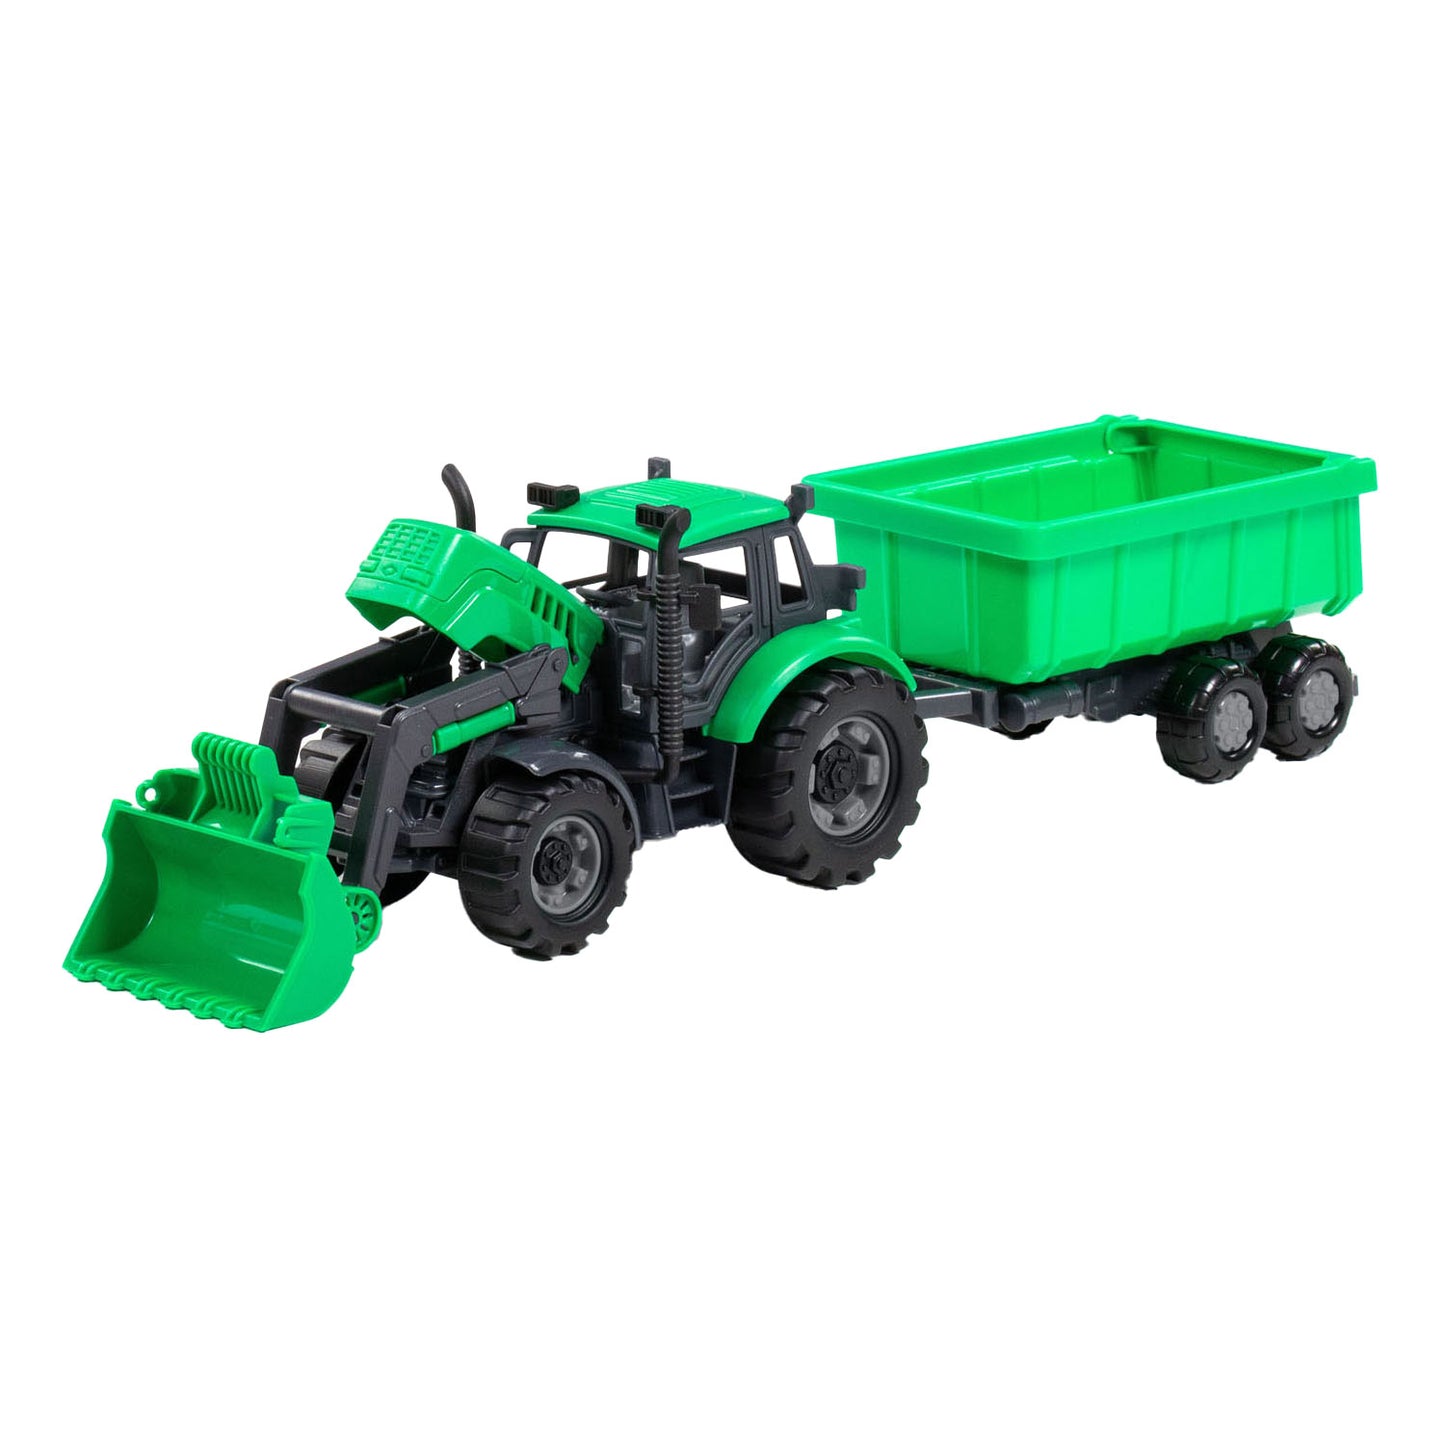 Cavallino Toys Tractor Cavallino con caricabatterie e rifornimento di torture verdi, scala 1:32